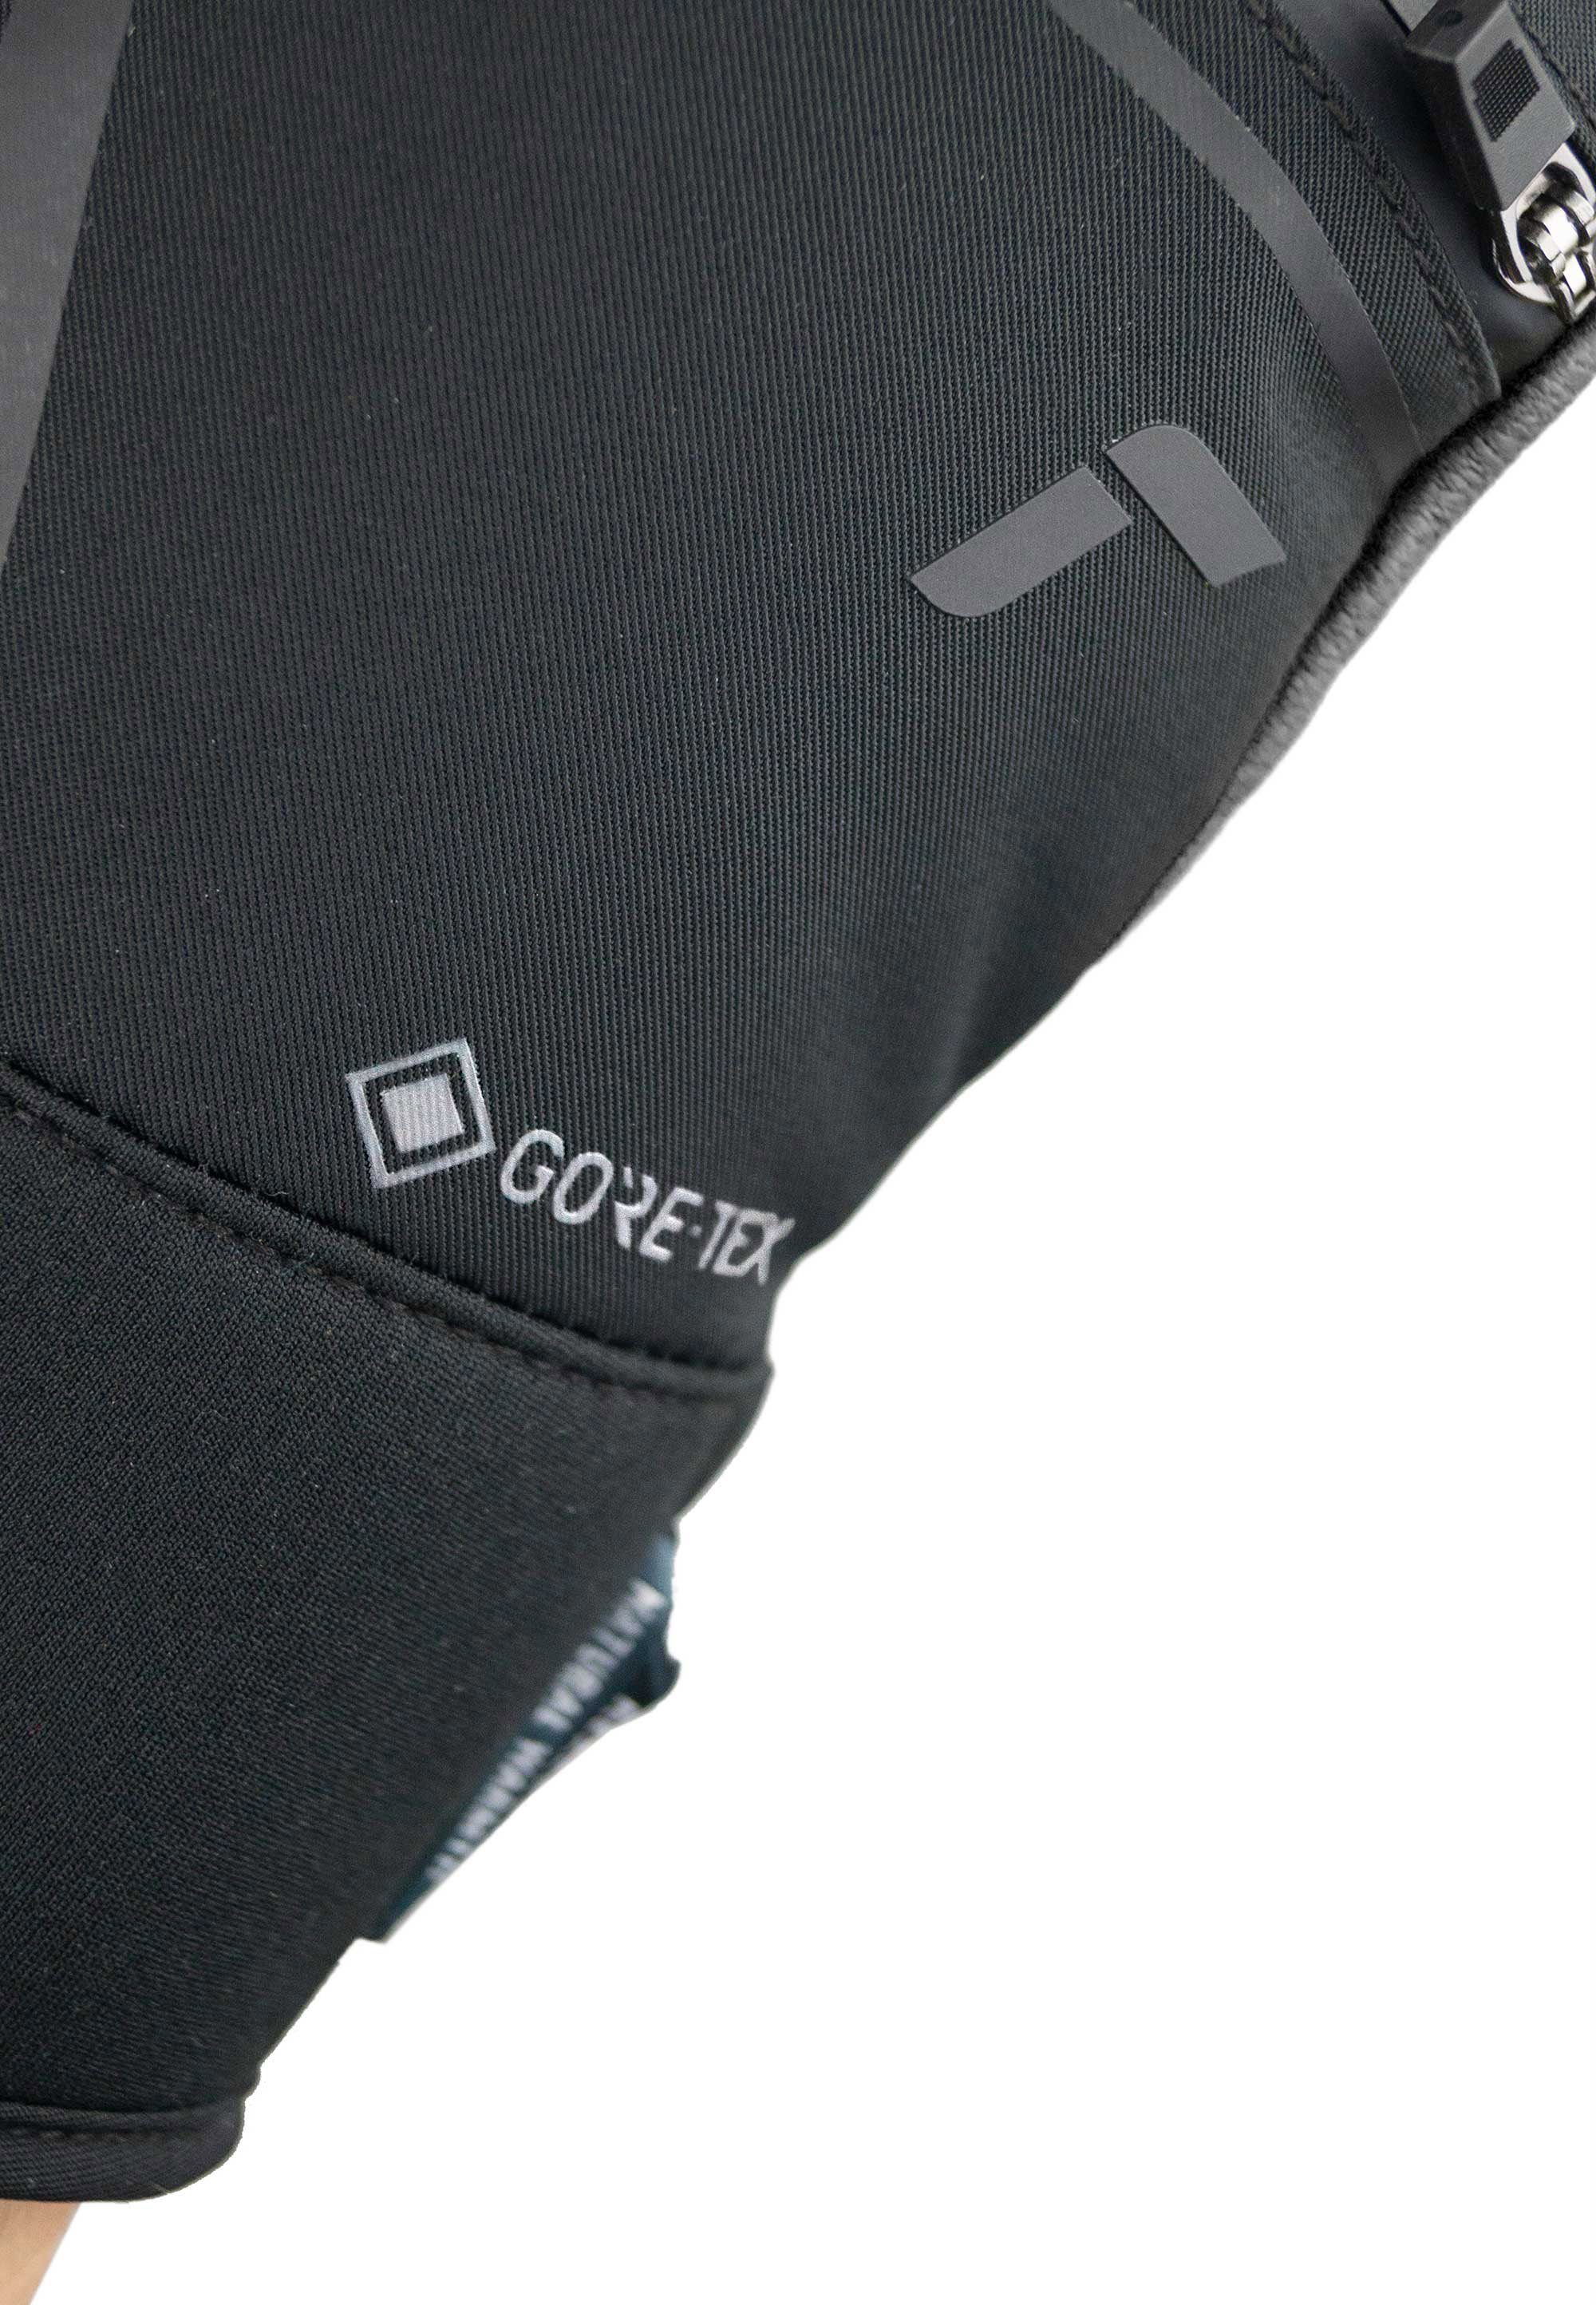 Spirit GORE-TEX mit Reusch Skihandschuhe verstärkten schwarz-silberfarben SC Down Fingerspitzen